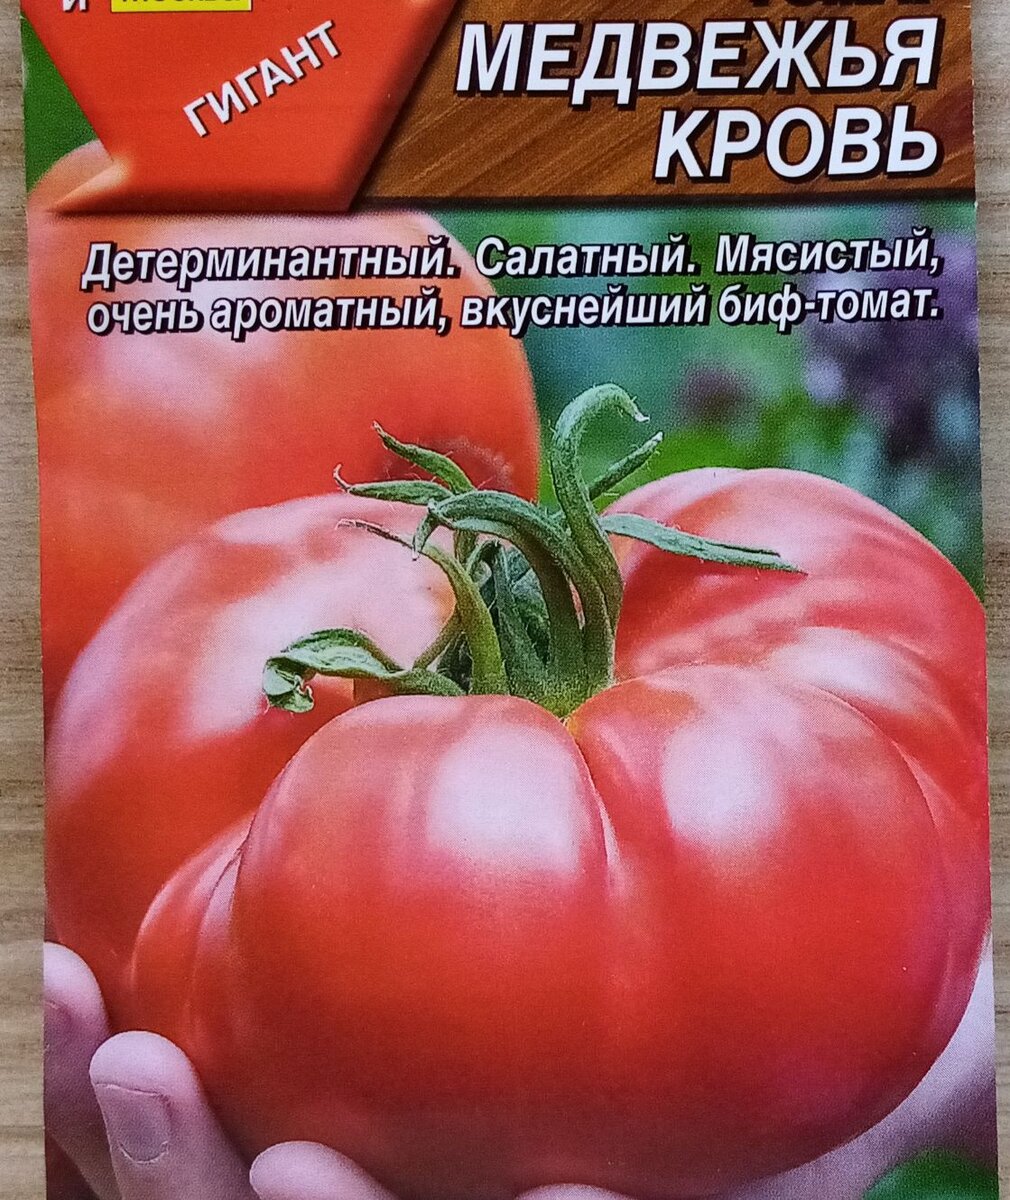 Биф-томаты: описание сортов помидоров для открытого грунта и теплиц, выращивание (22 фото) - Новости Садоводства